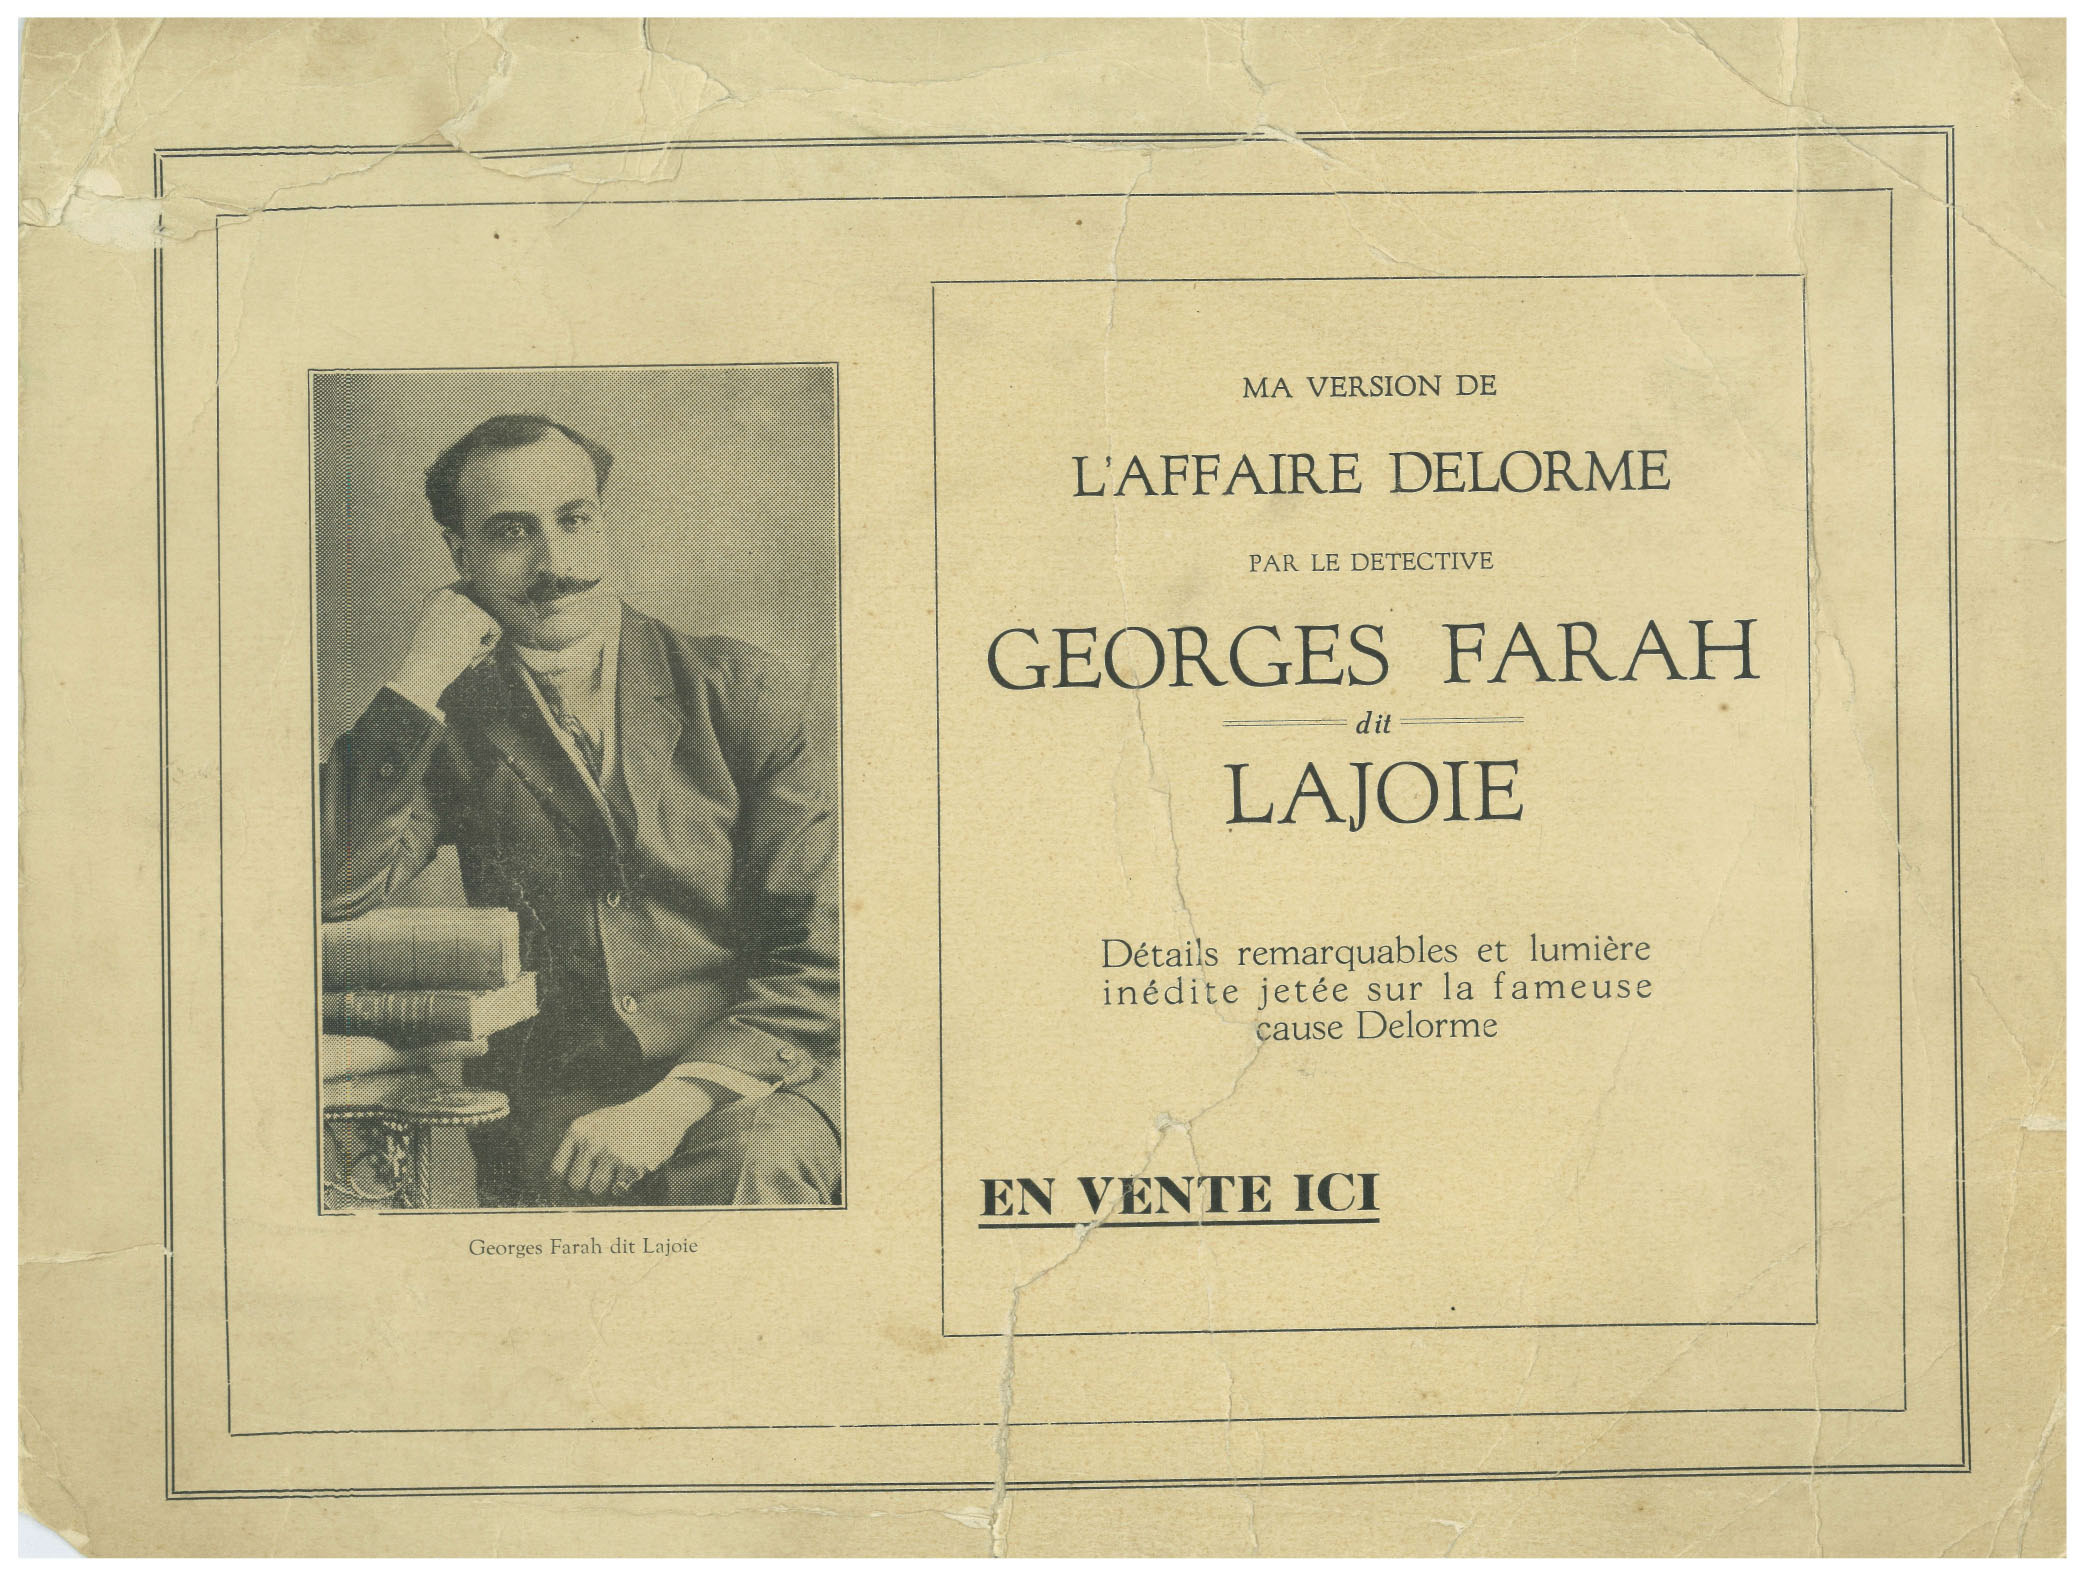 Affiche publicitaire annonçant la parution de Ma version de l’affaire Delorme de Georges Farah-Lajoie.